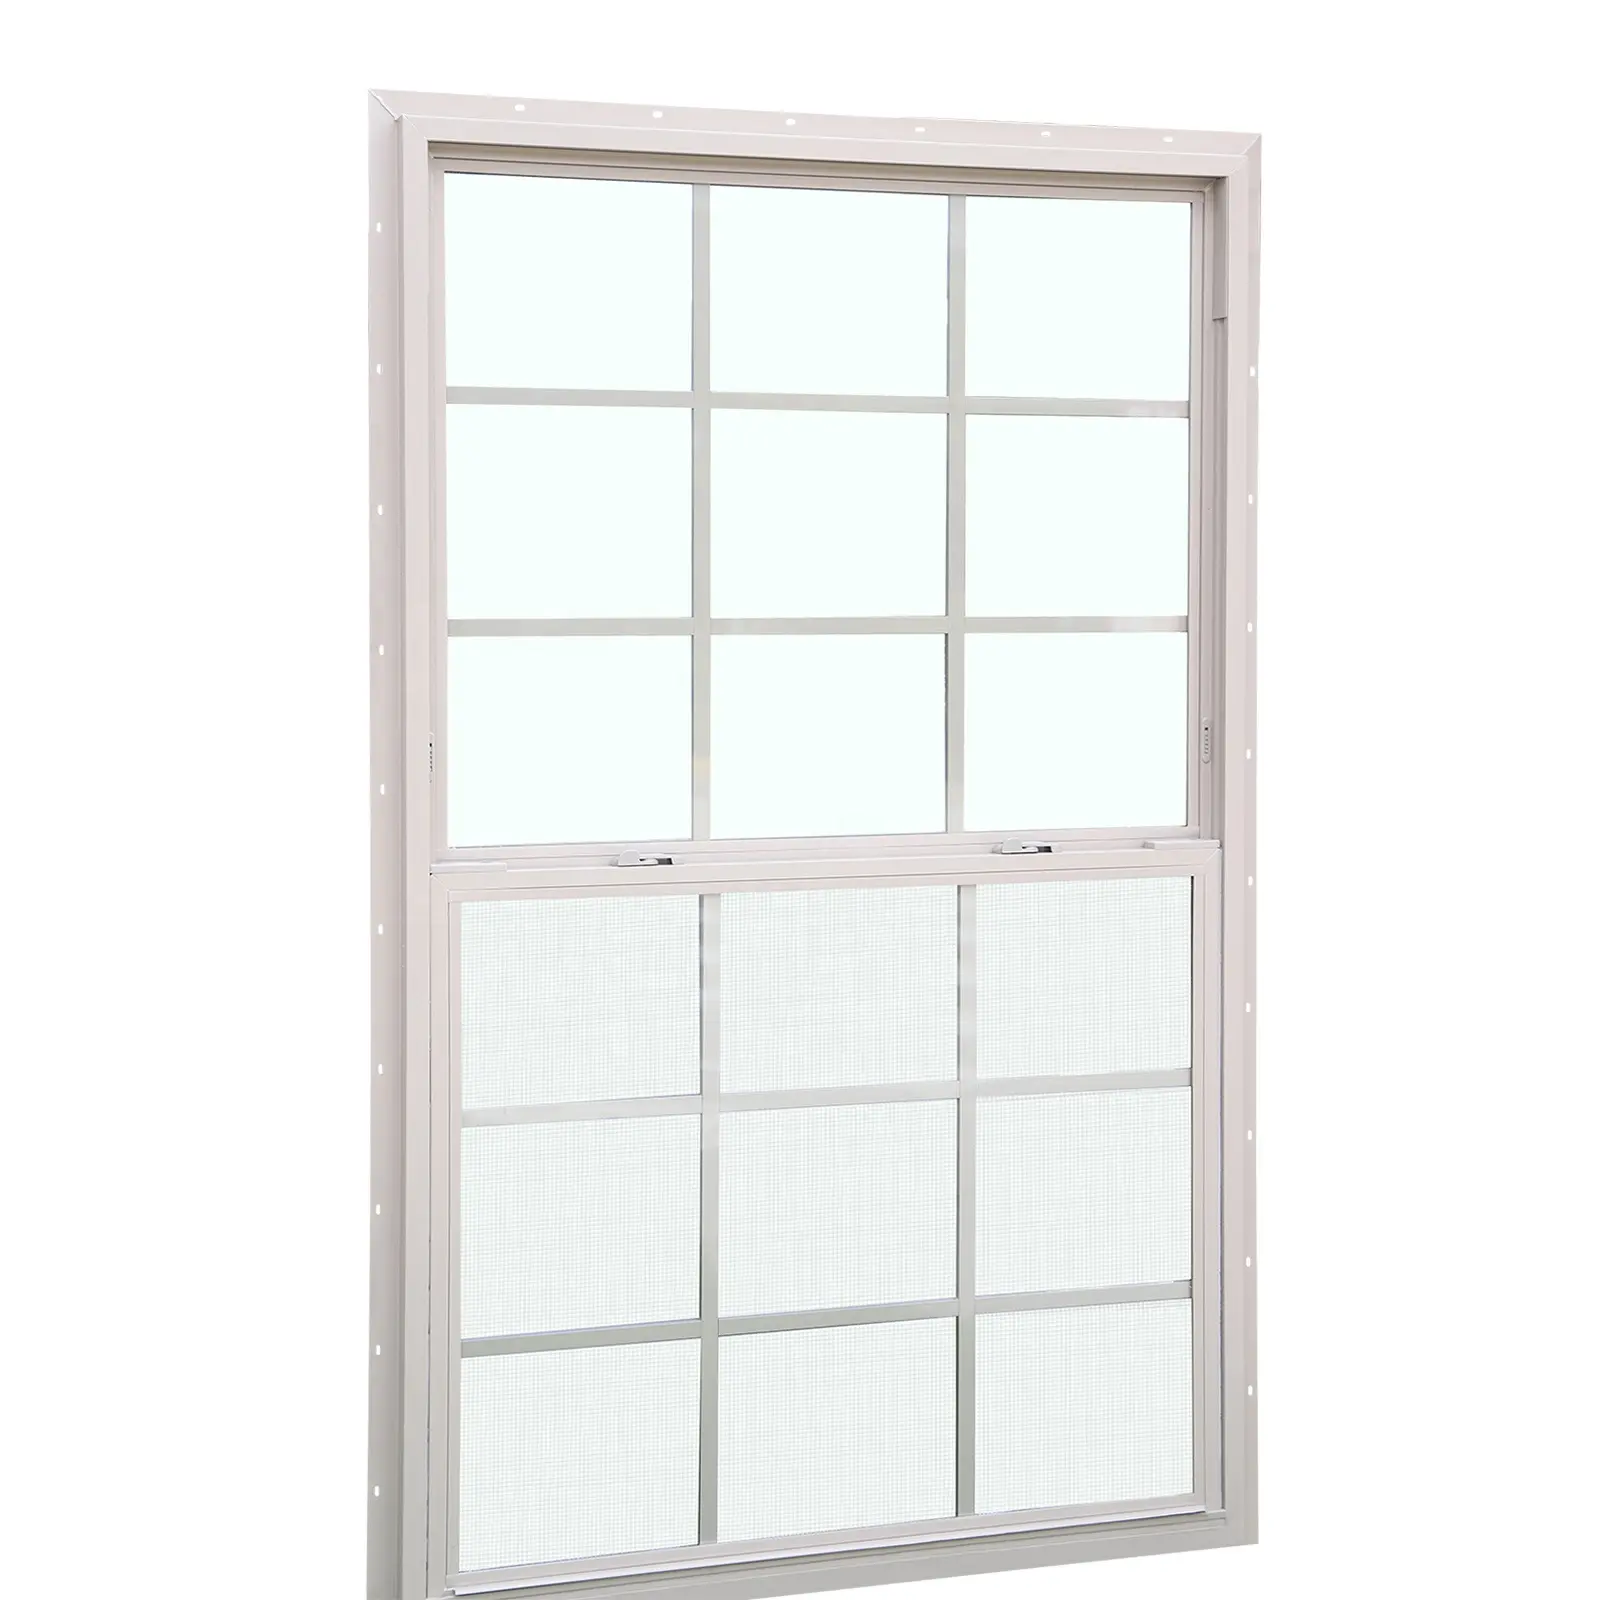 Лидер продаж, американские стандартные виниловые окна, белые одинарные окна из ПВХ с решетками для дома